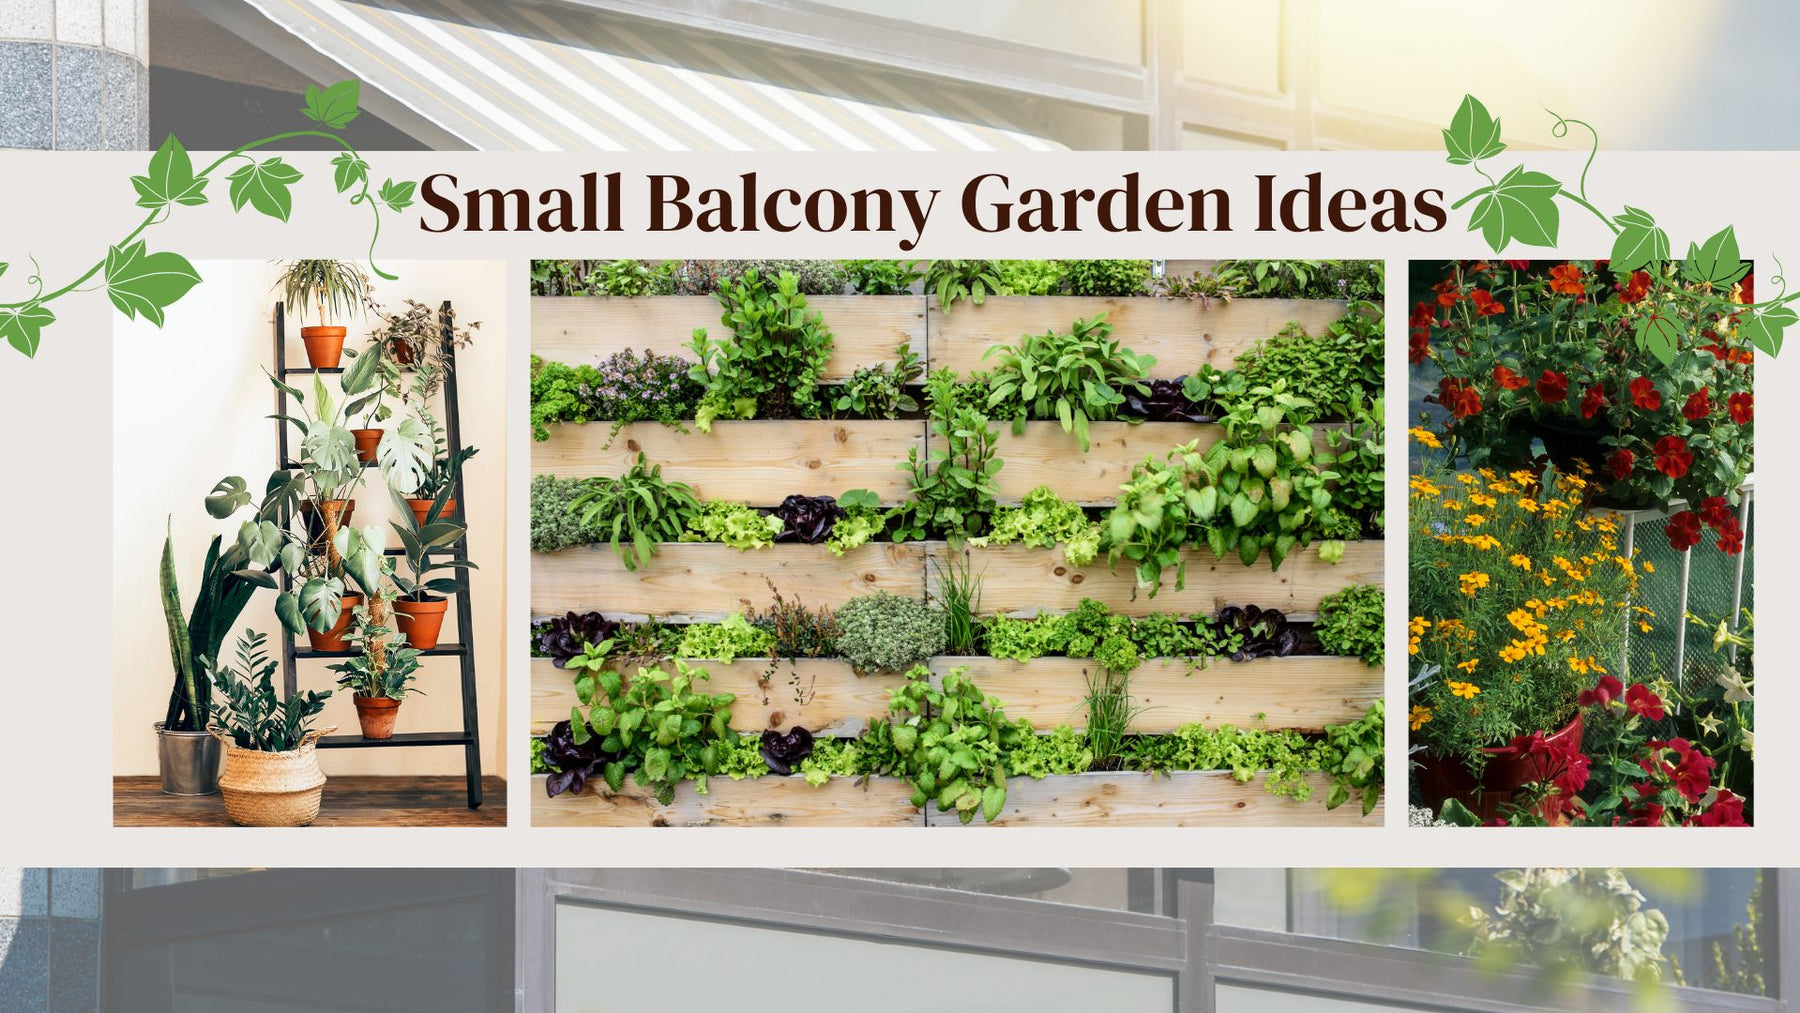 Ideas for a Small Balcony Garden in a city apartment